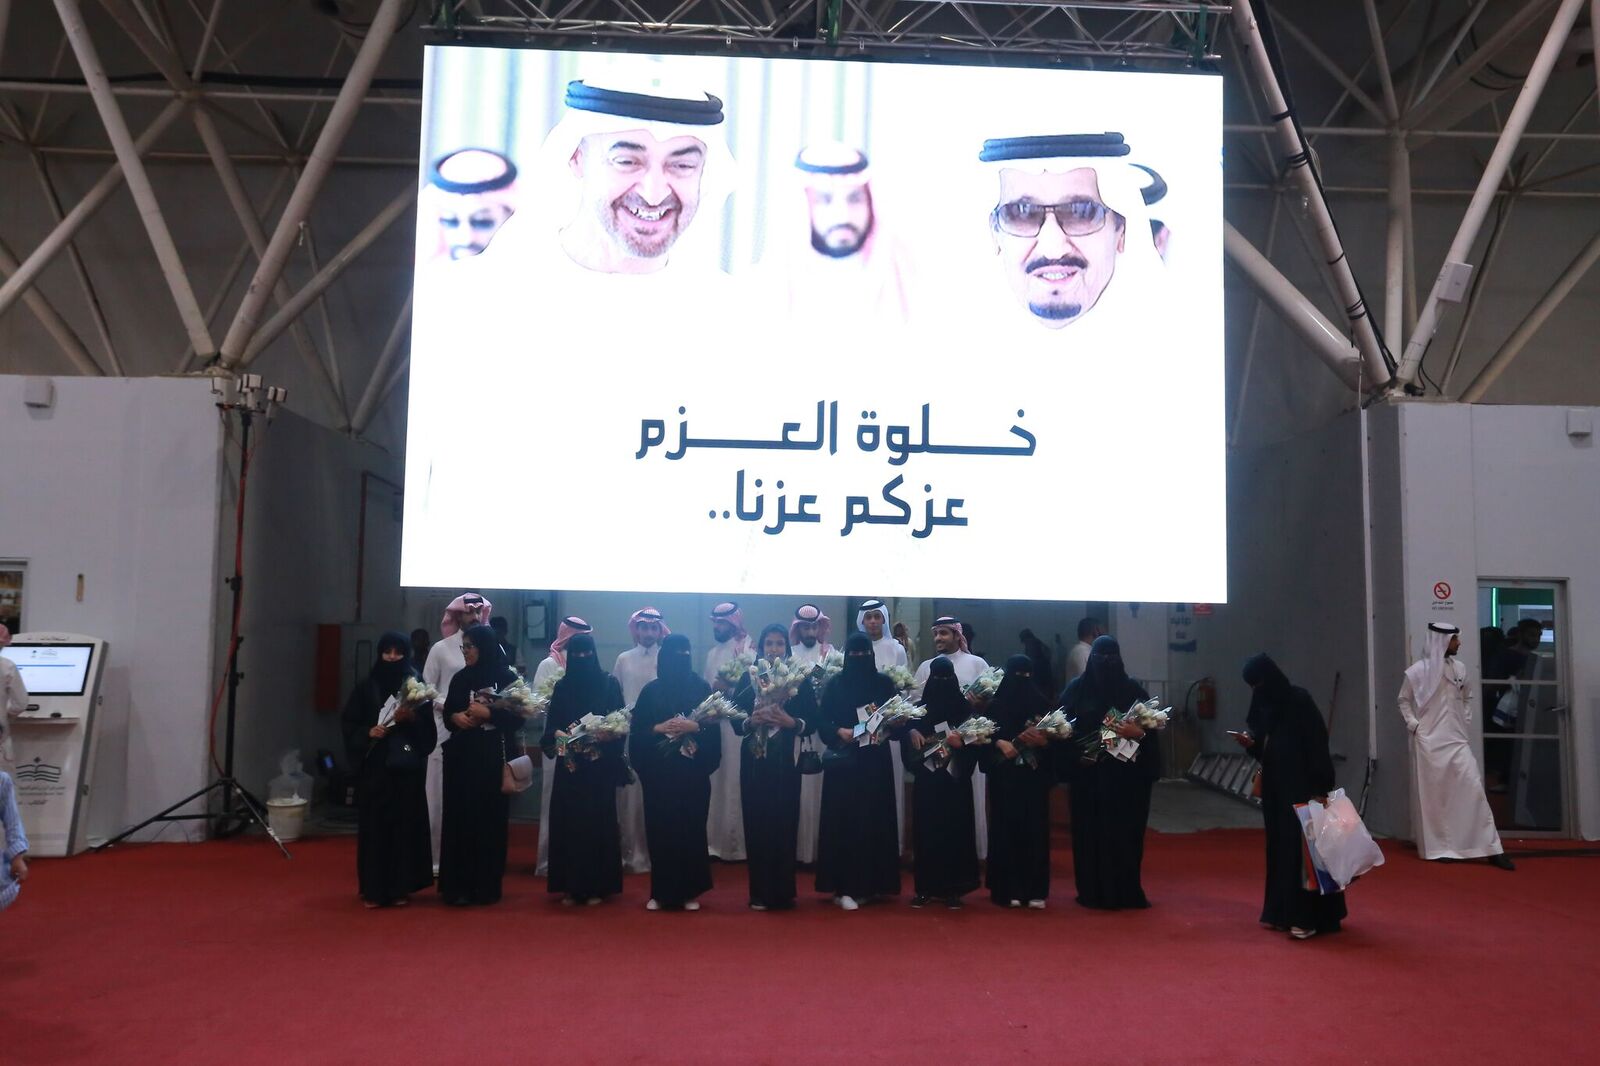 بالصور.. معرض الكتاب يوثق العلاقات السعودية الإماراتية في فيلم خلوة العزم - المواطن